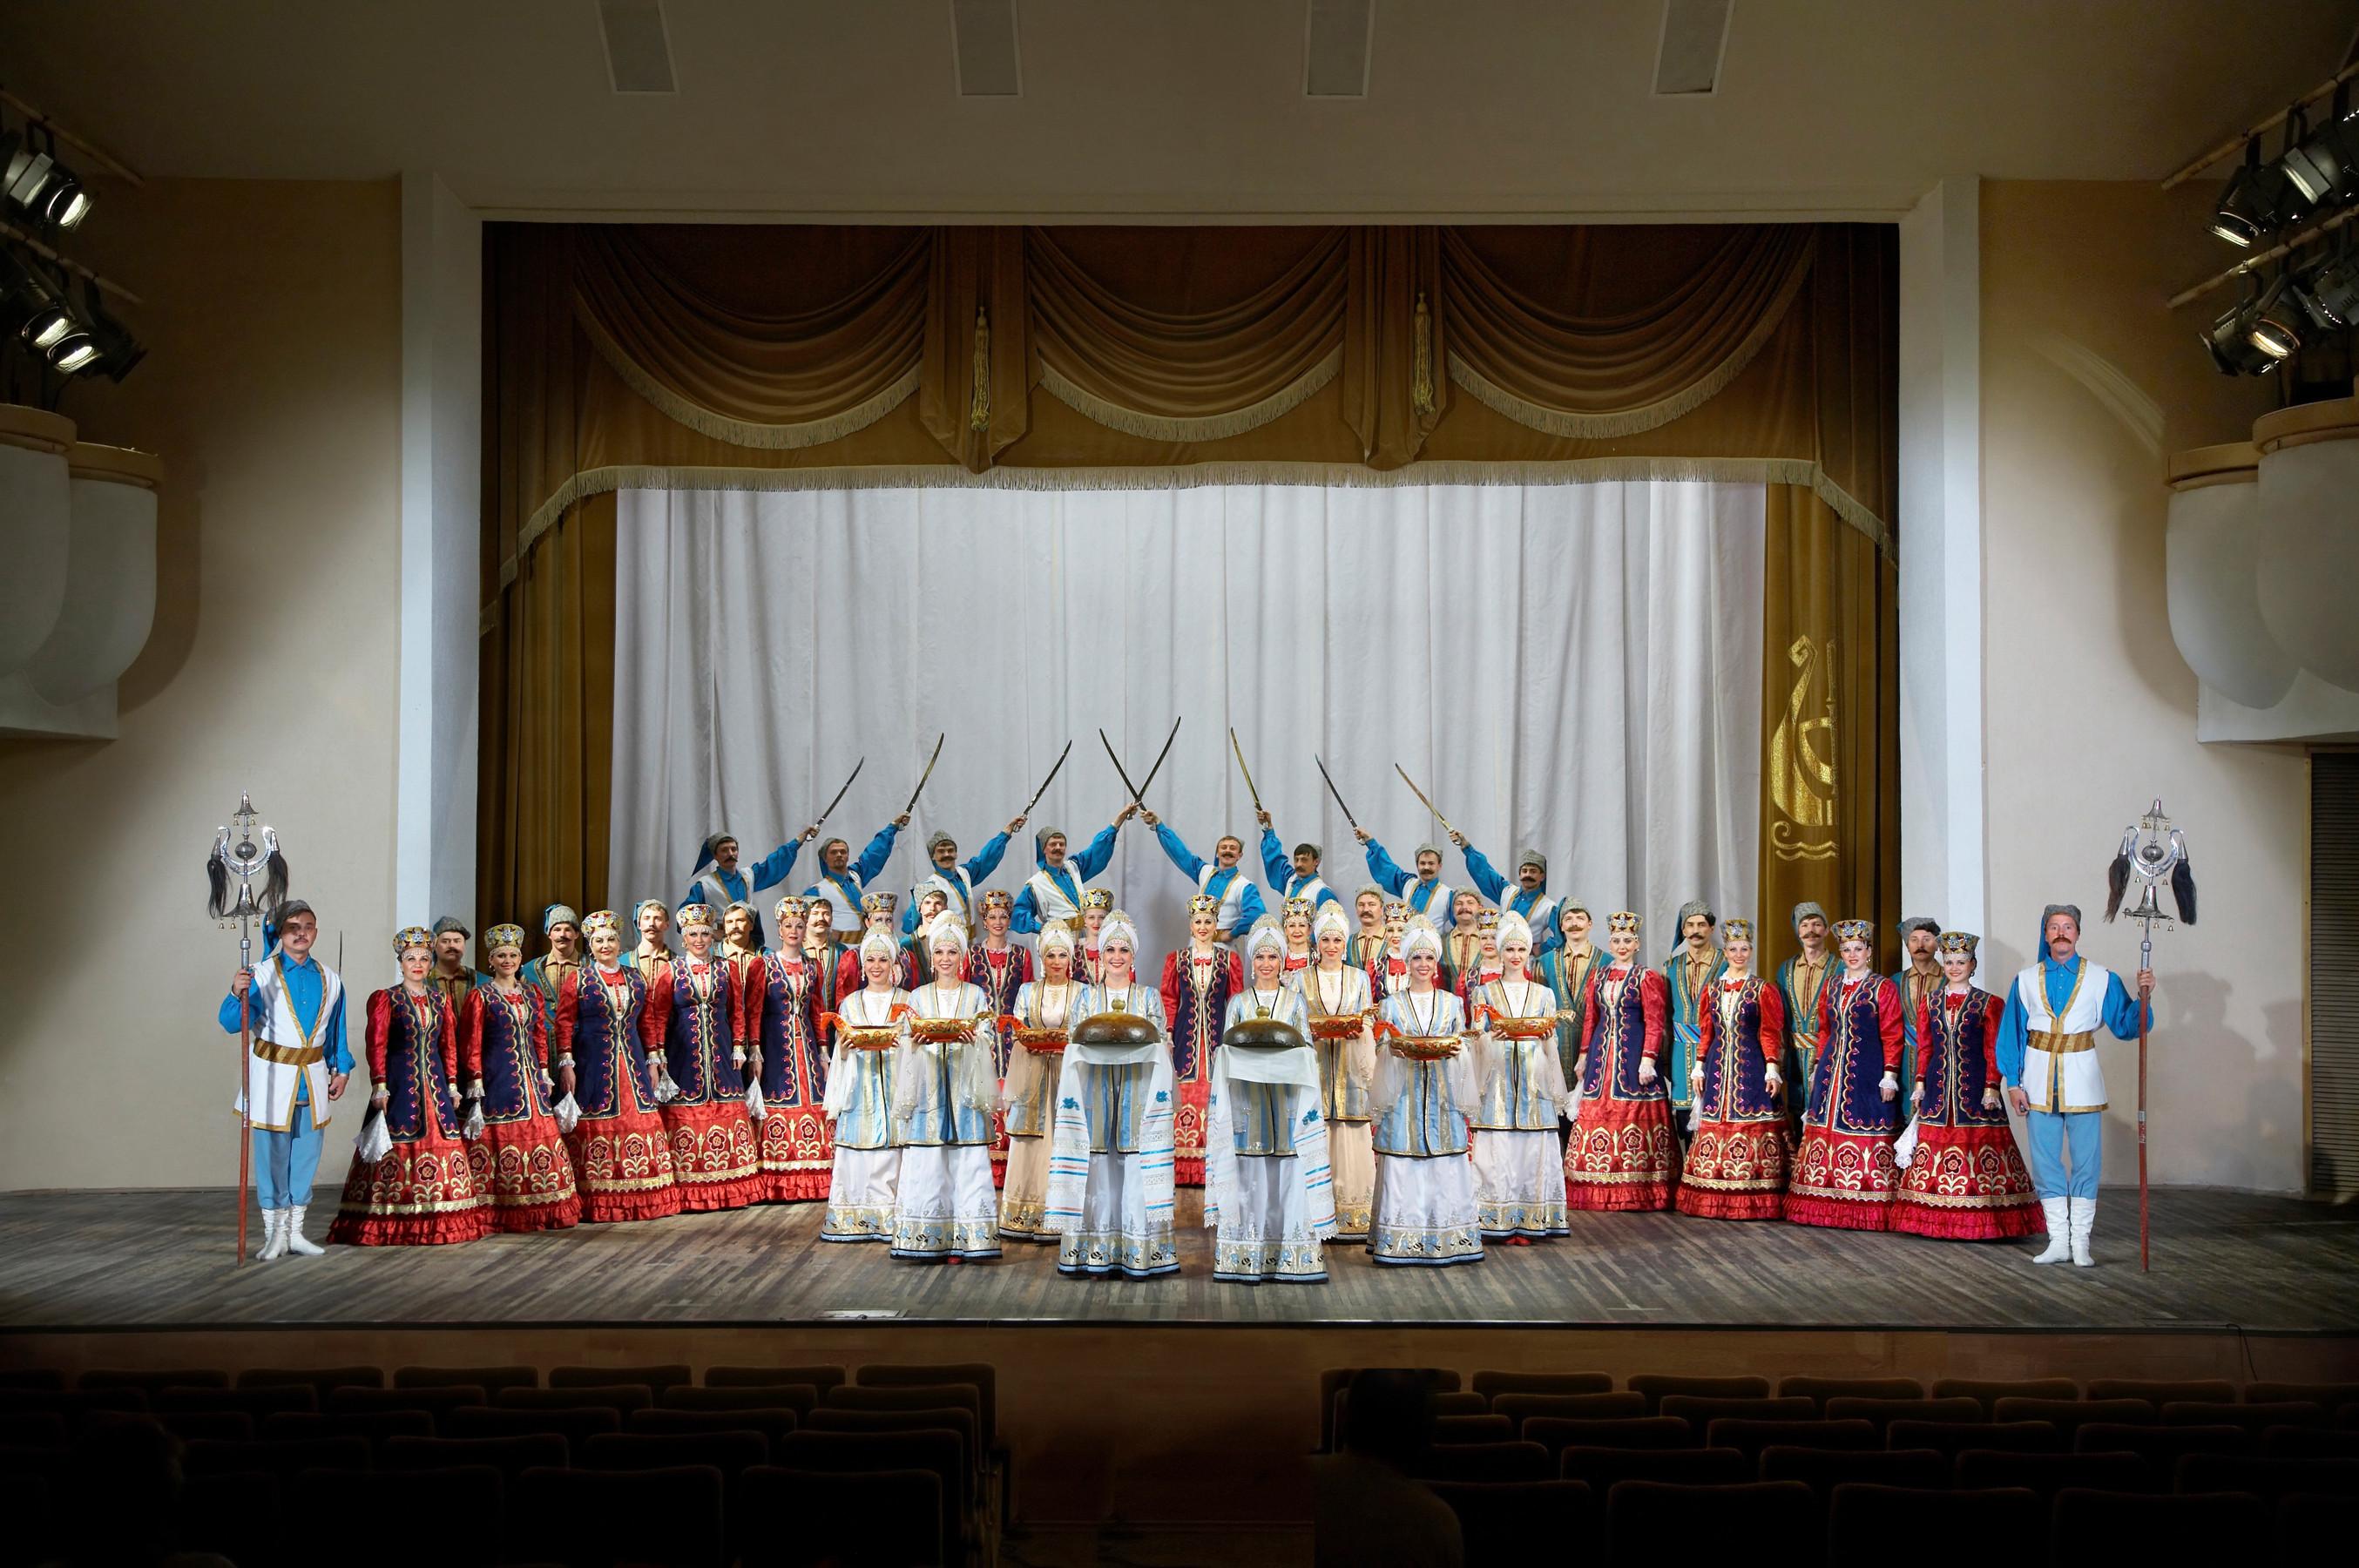 康樂及文化事務署五月下旬將呈獻兩場頓河哥薩克國立民族歌舞團的精湛演出。圖示頓河哥薩克國立民族歌舞團過往演出劇照。